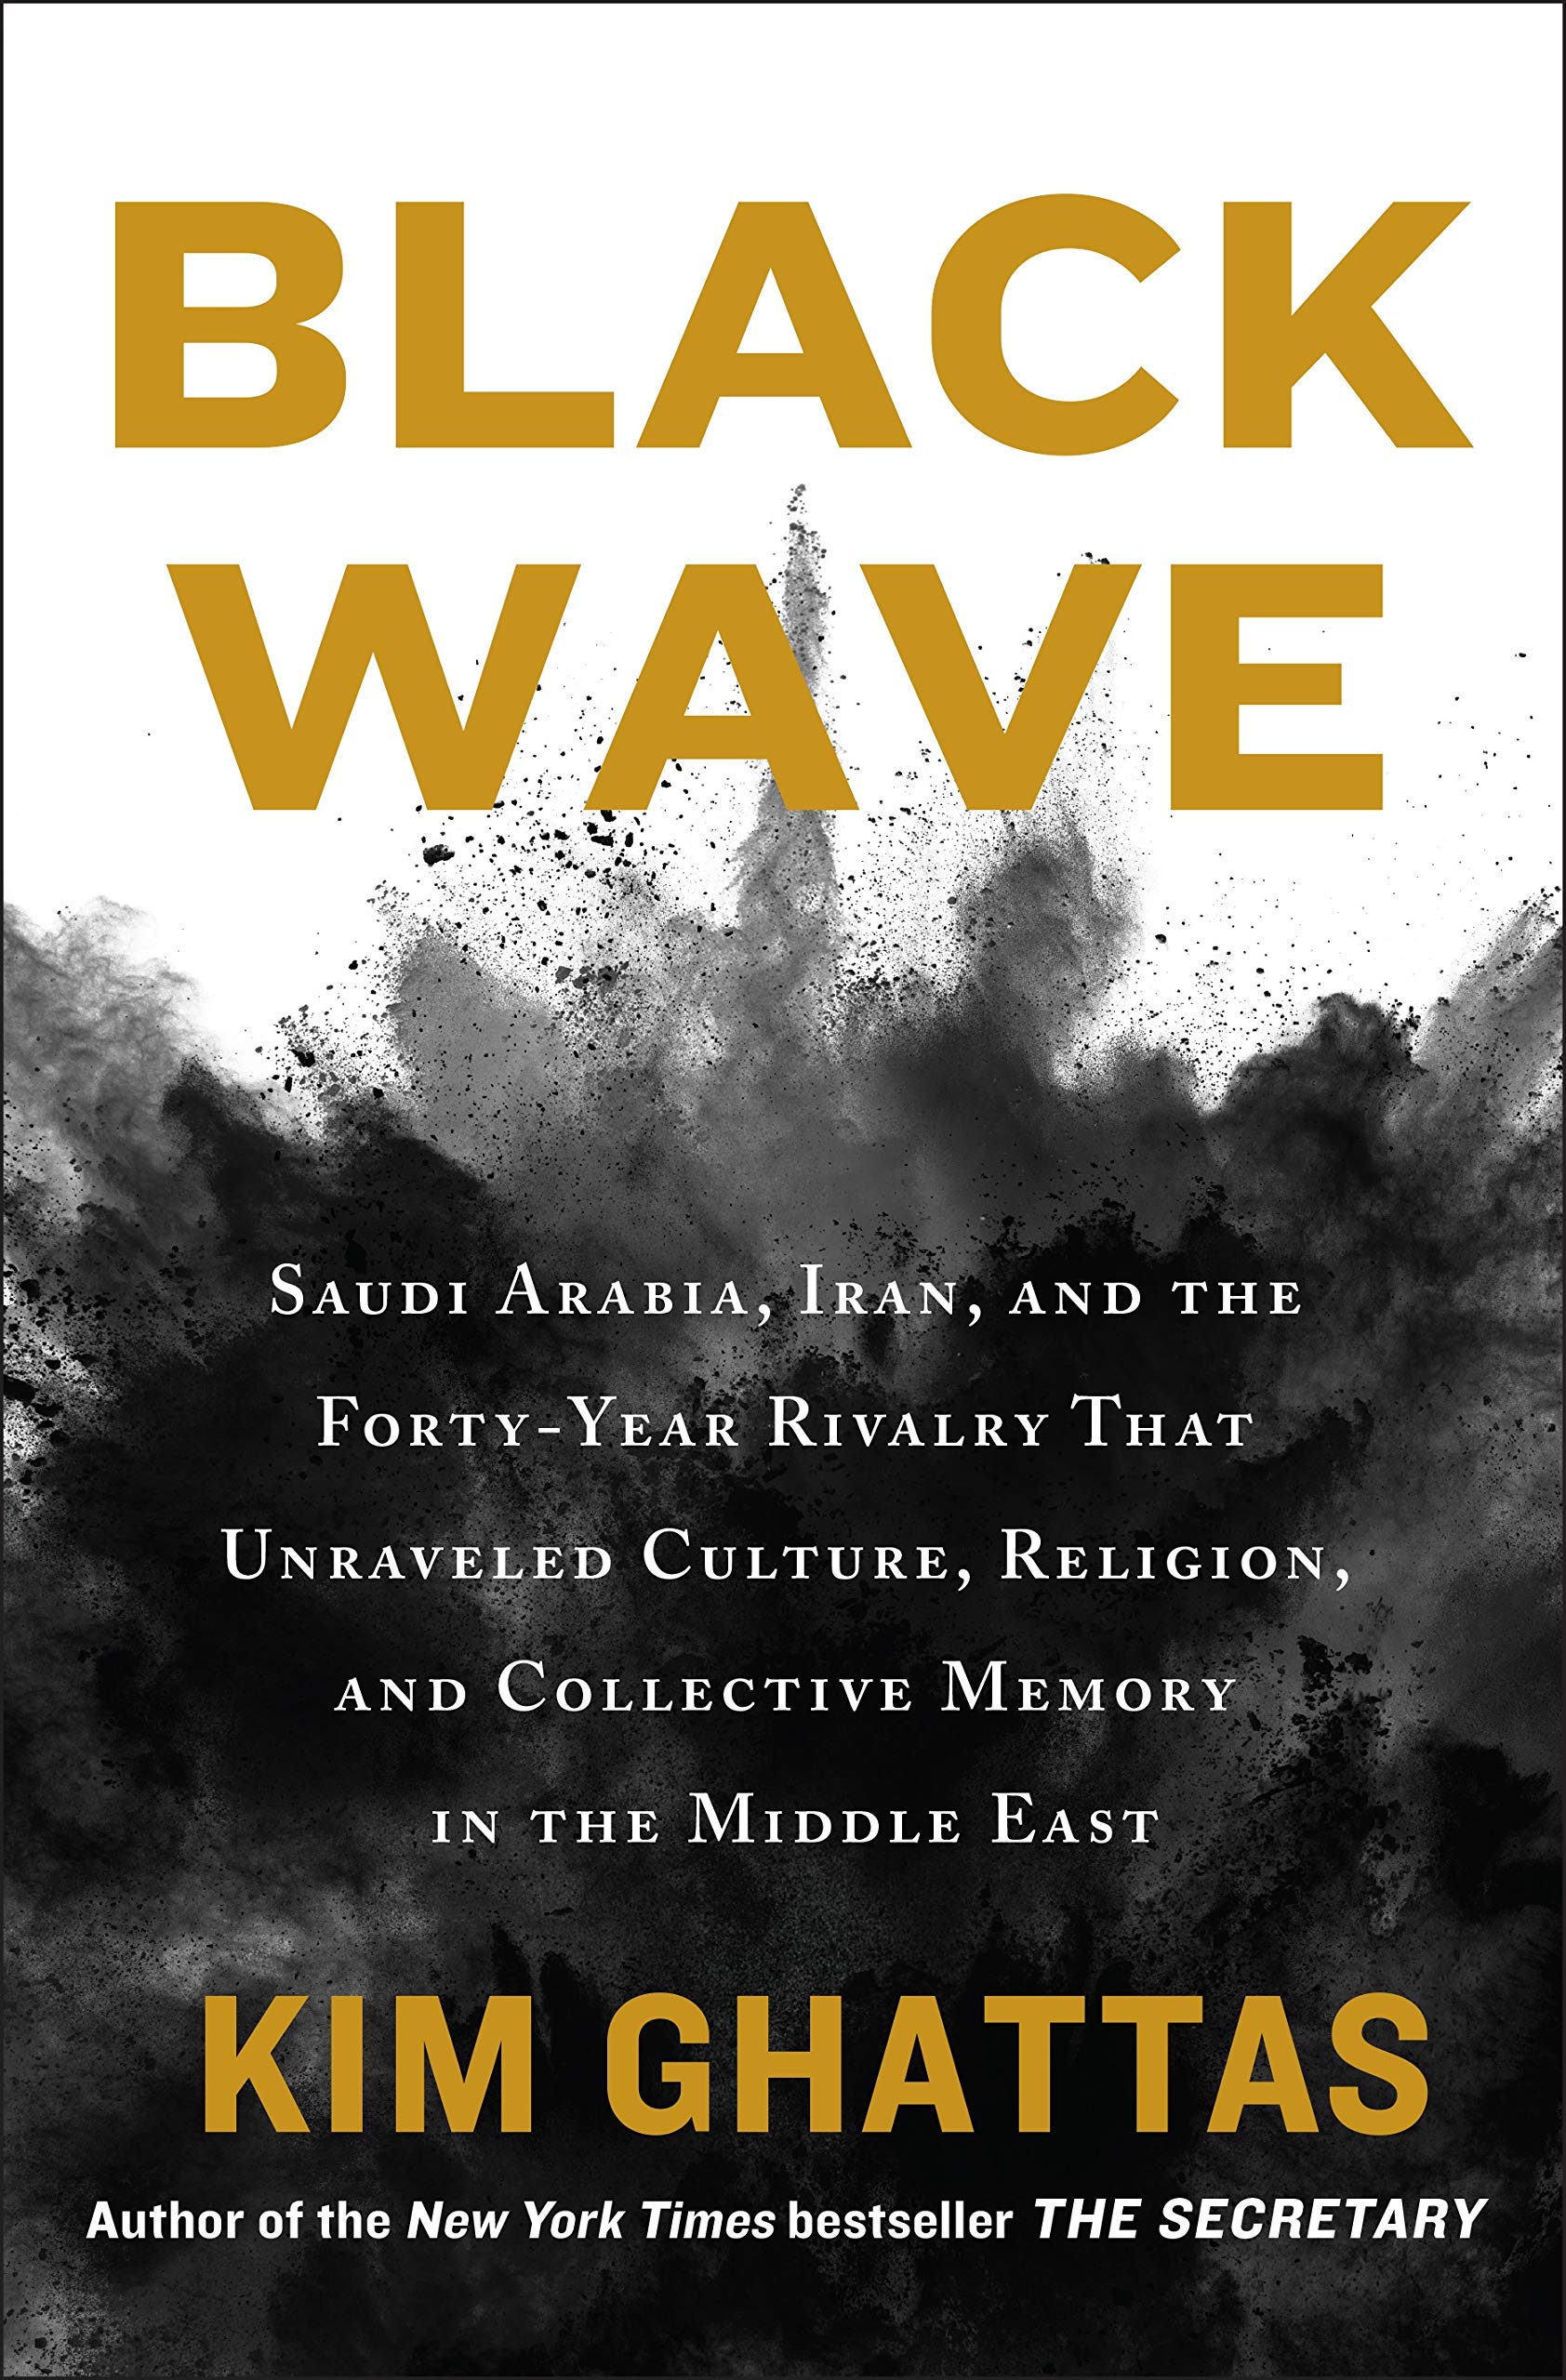 الغلاف الإنكليزي لكتاب كيم غطاس "موجة سوداء: السعودية وإيران وتنافس على مدى أربعين عامًا أدى إلى انهيار الثقافة والدين والذاكرة الجماعية في الشرق الأوسط"، دار النشر هنري هولت، نيويورك 2020.